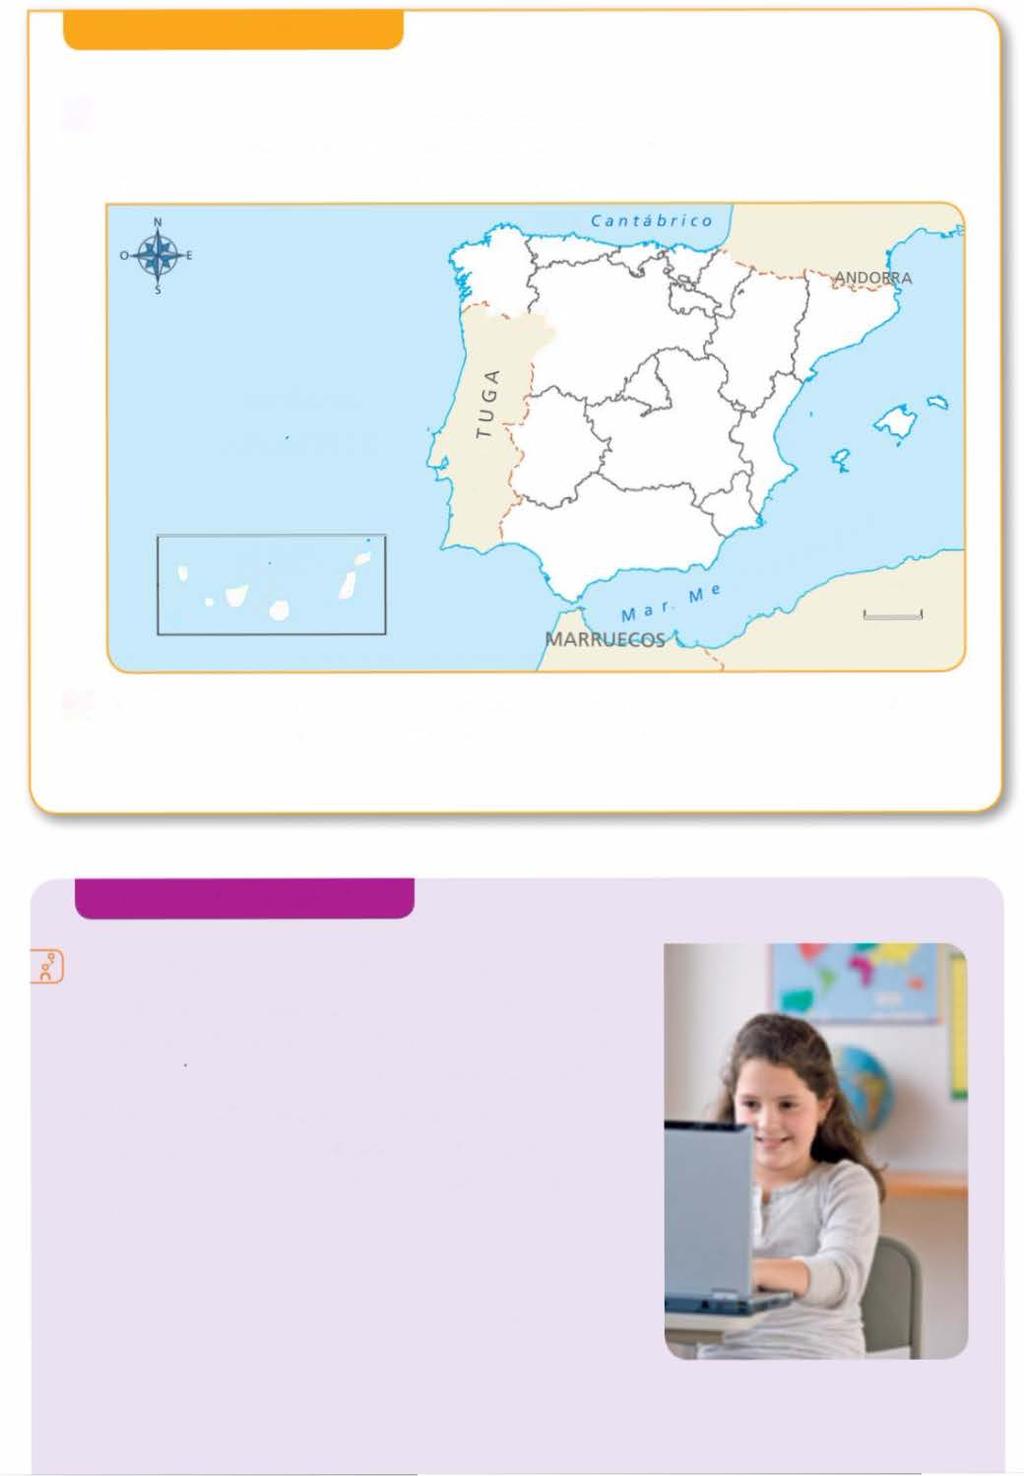 Explora tu Comunidad Q Calca en tu cuaderno el mapa político de España y colorea tu Comunidad. Después, escribe sobre el mapa el nombre de las Comunidades y Ciudades Autónomas de España.